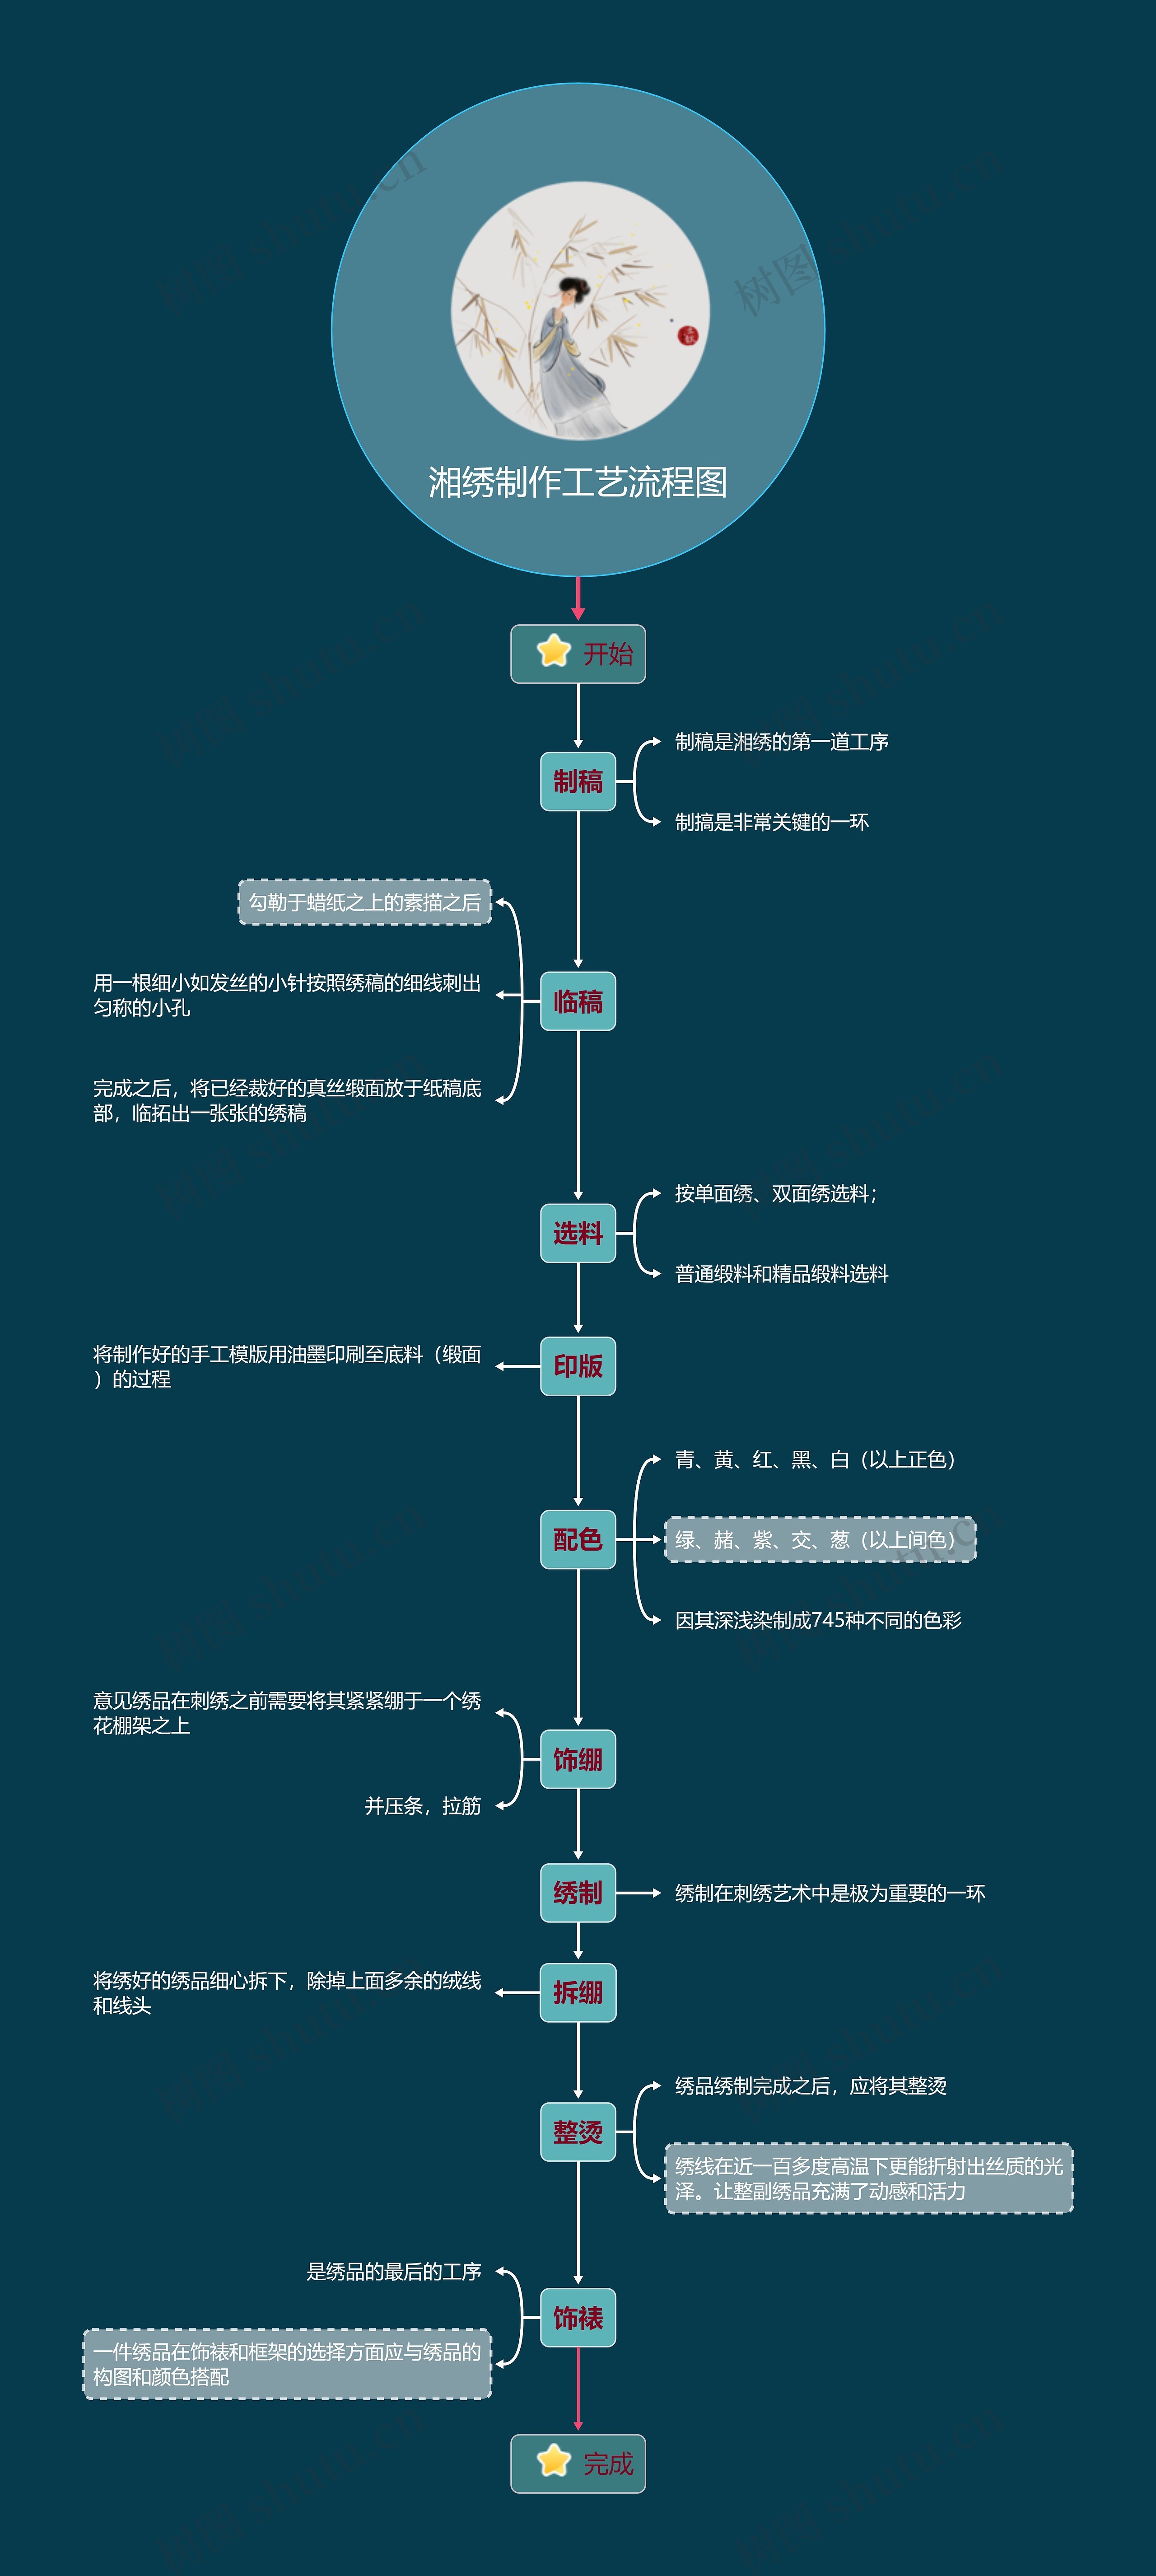 湘绣制作工艺框架流程图